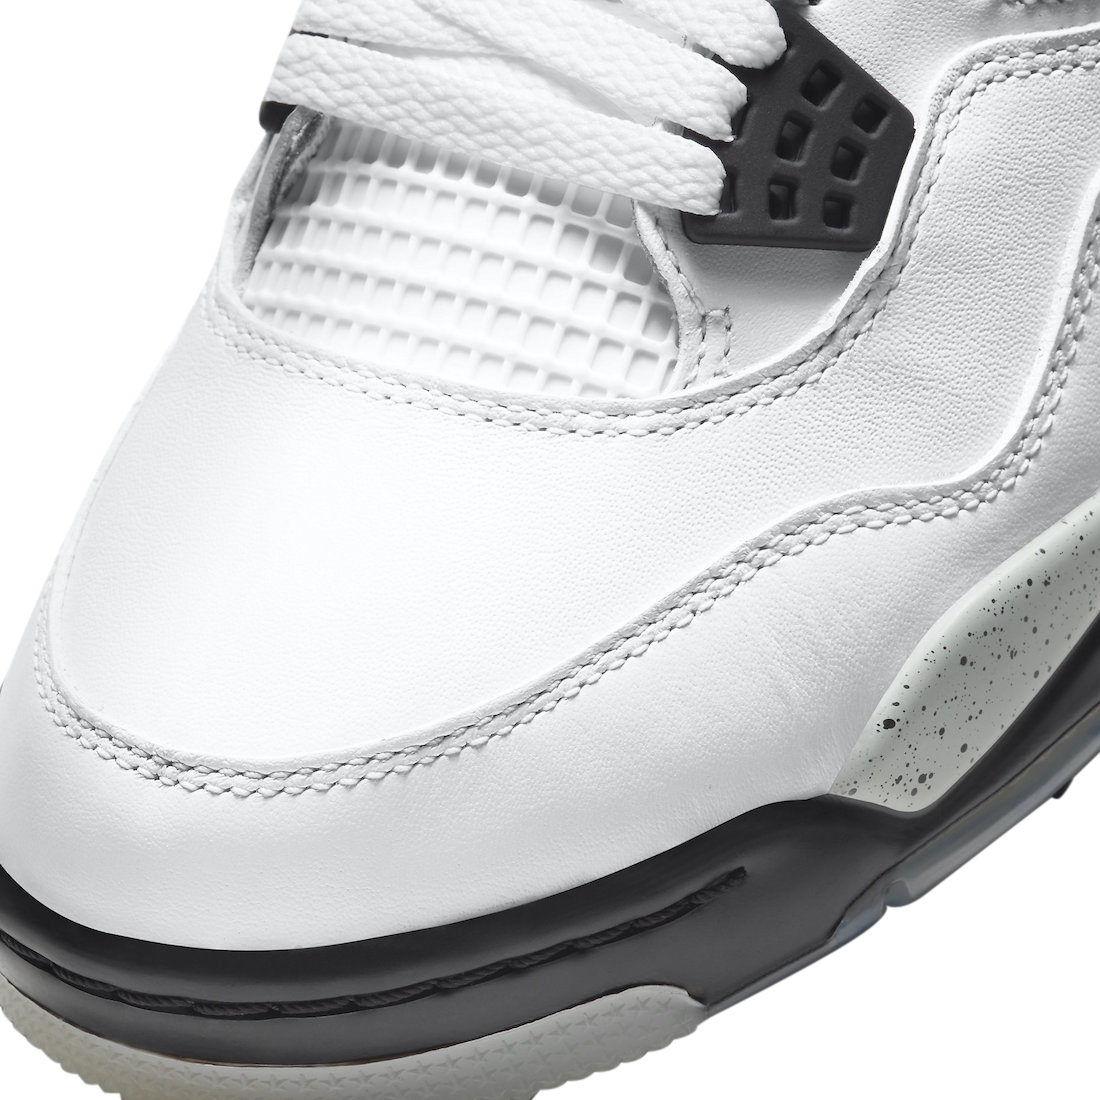 Air Jordan 4 Golf White Cement - Mar 2021 - CU9981-100